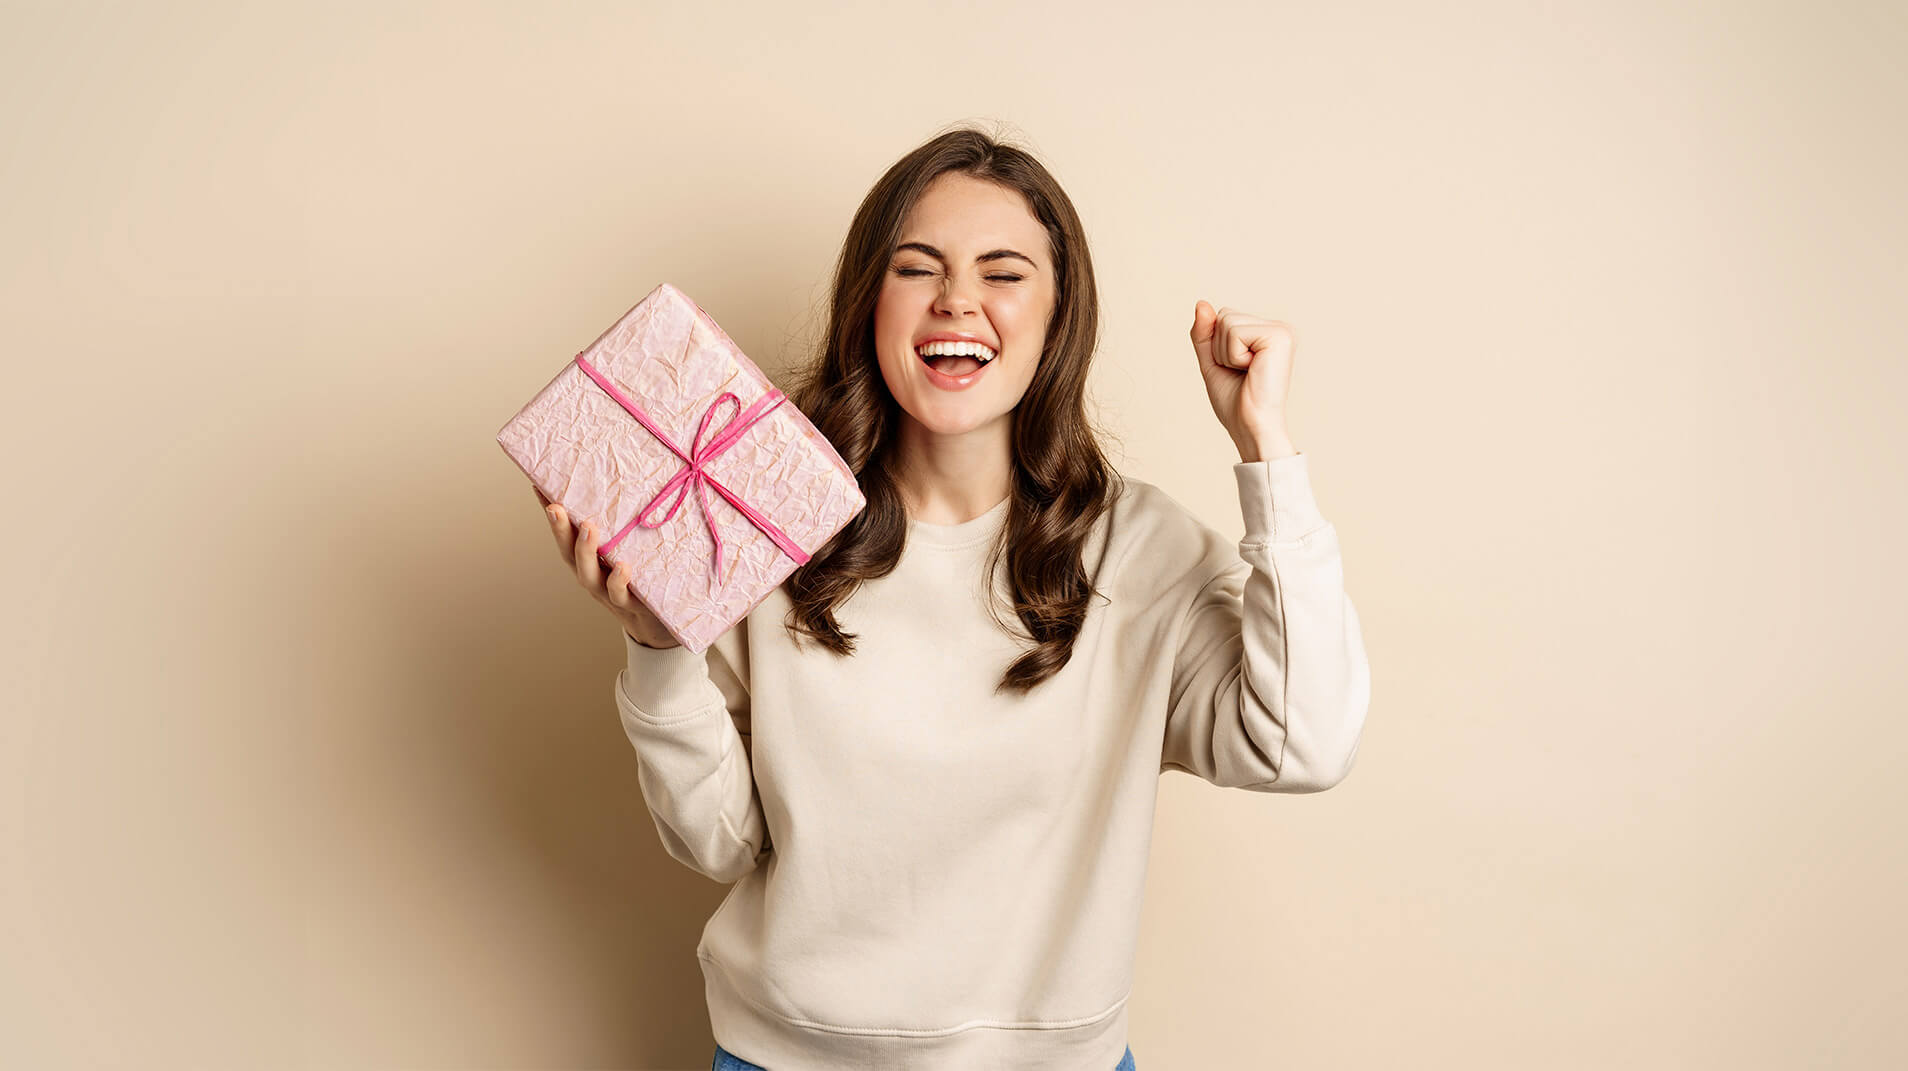 De leukste top 10 cadeaus voor vrouwen!